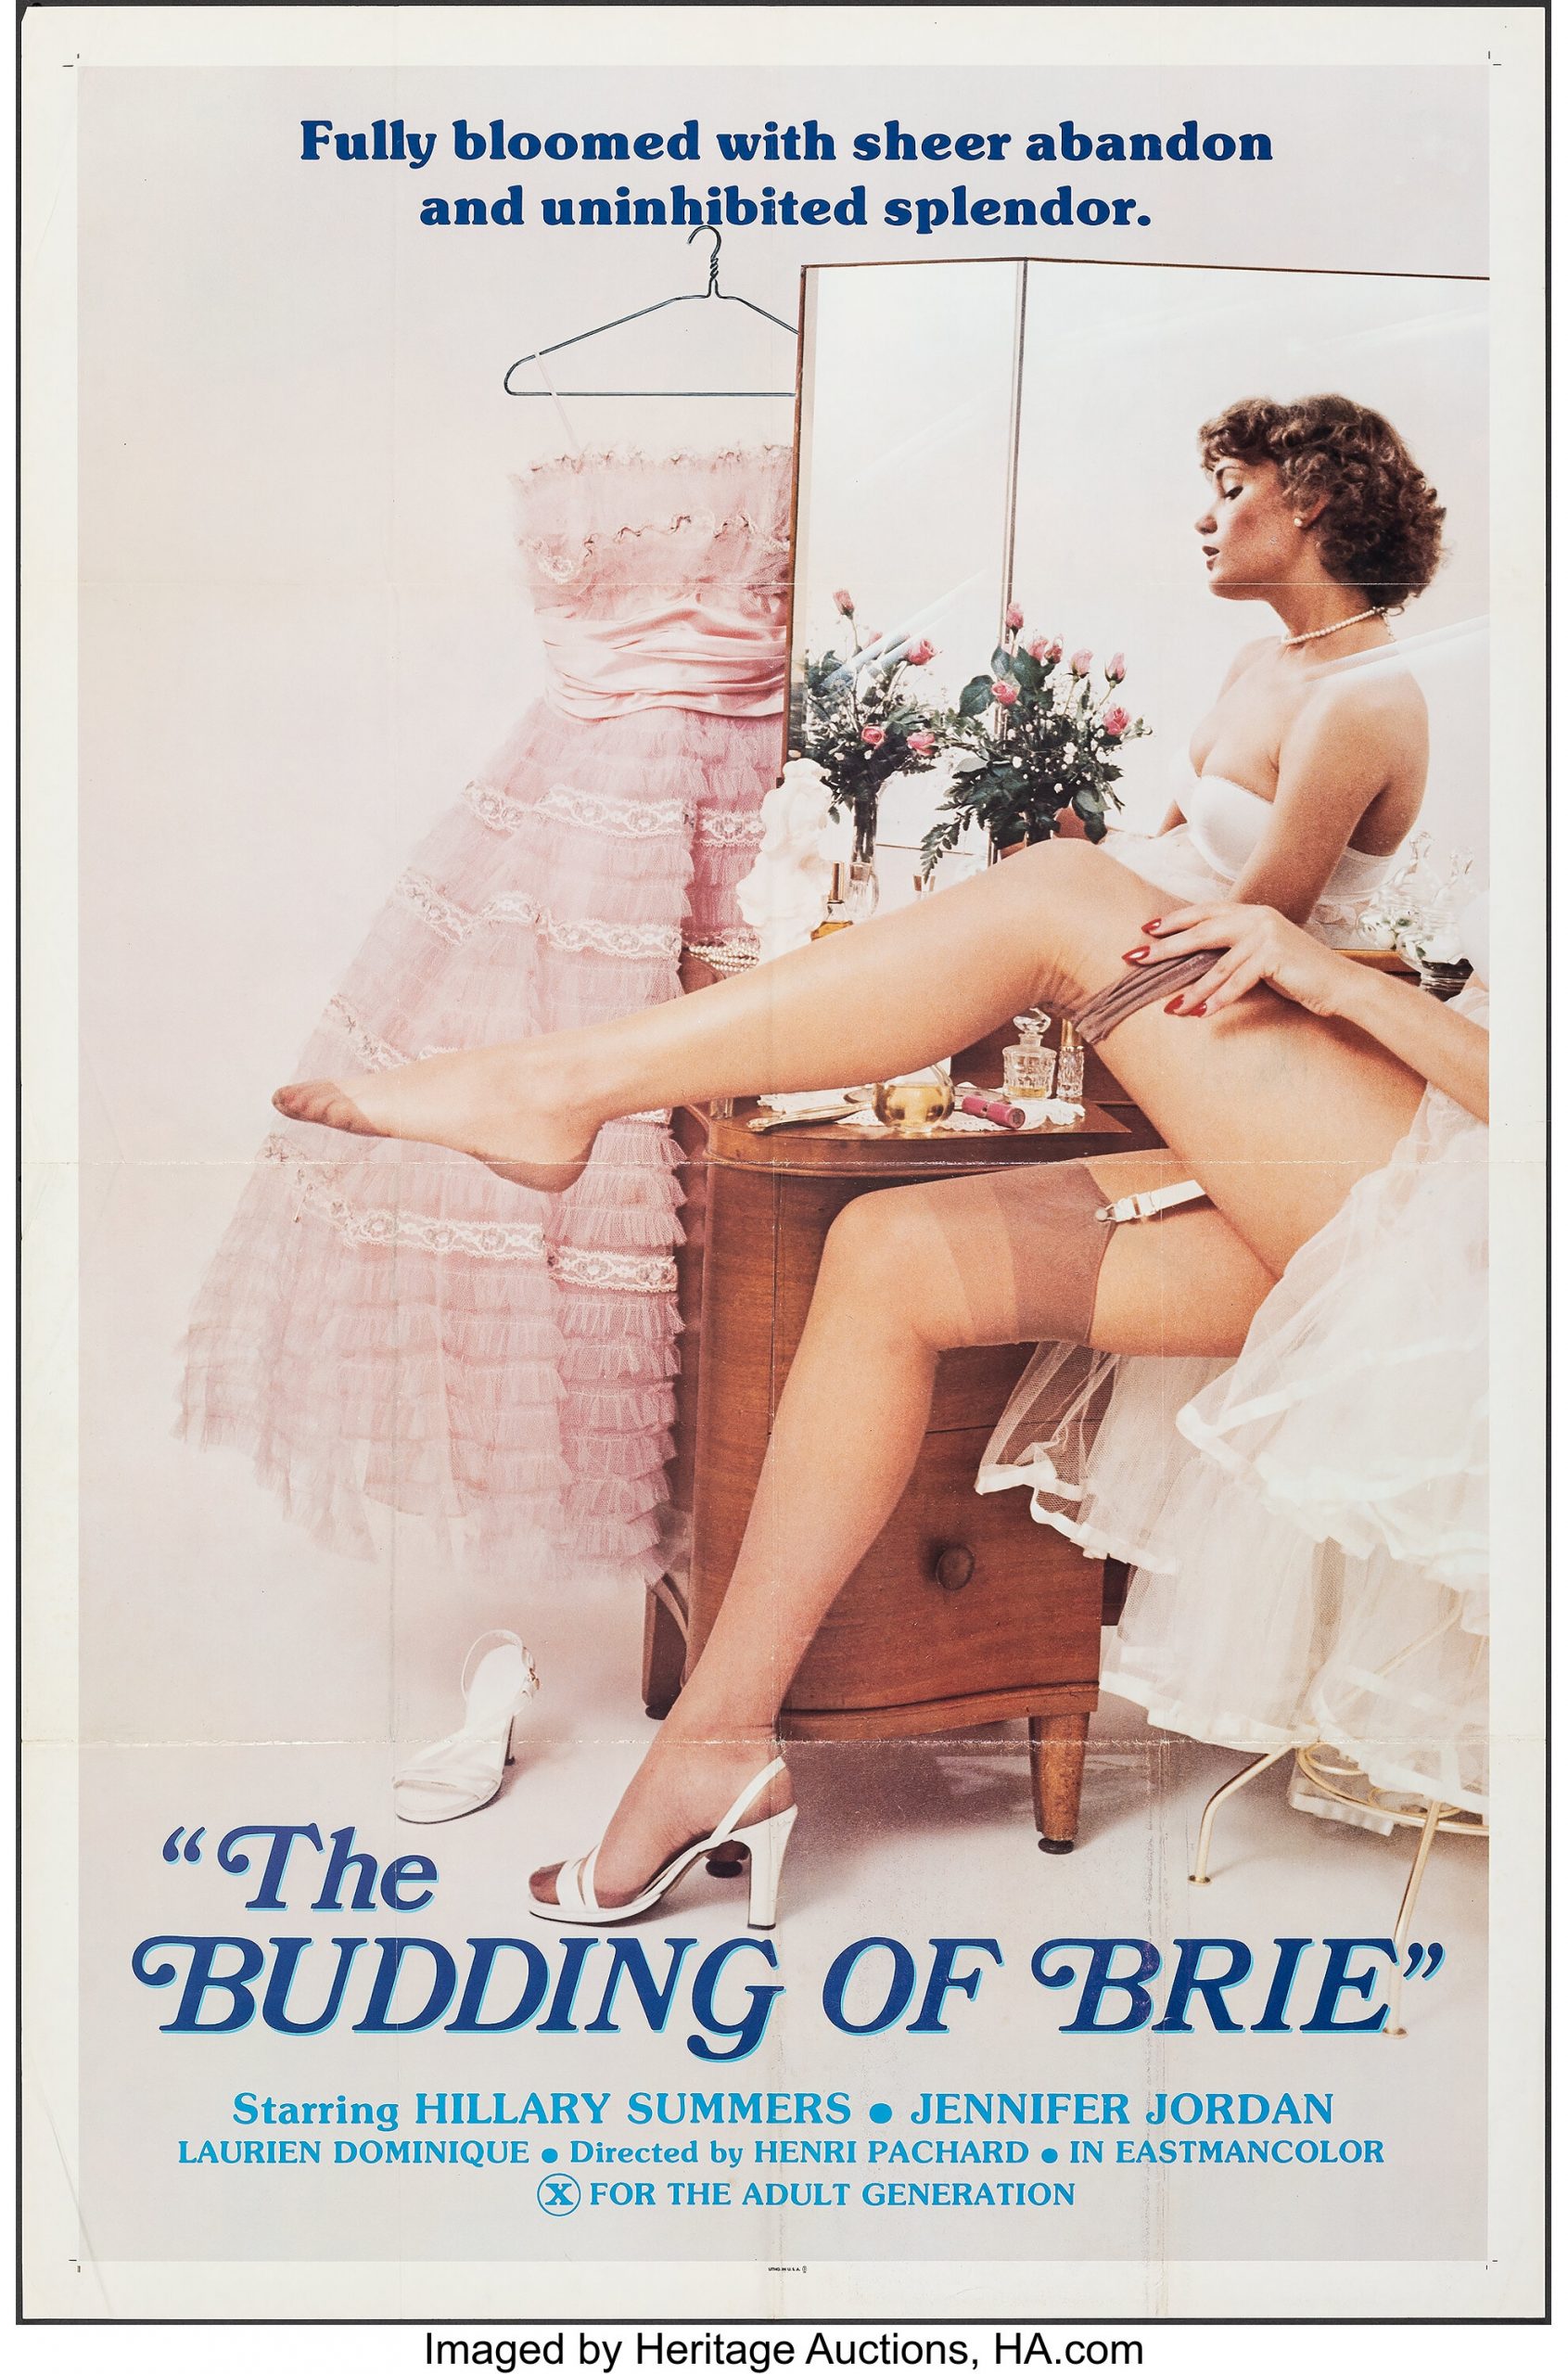 The Budding of Brie (1980) - Original Poster - vintagepornfun.com